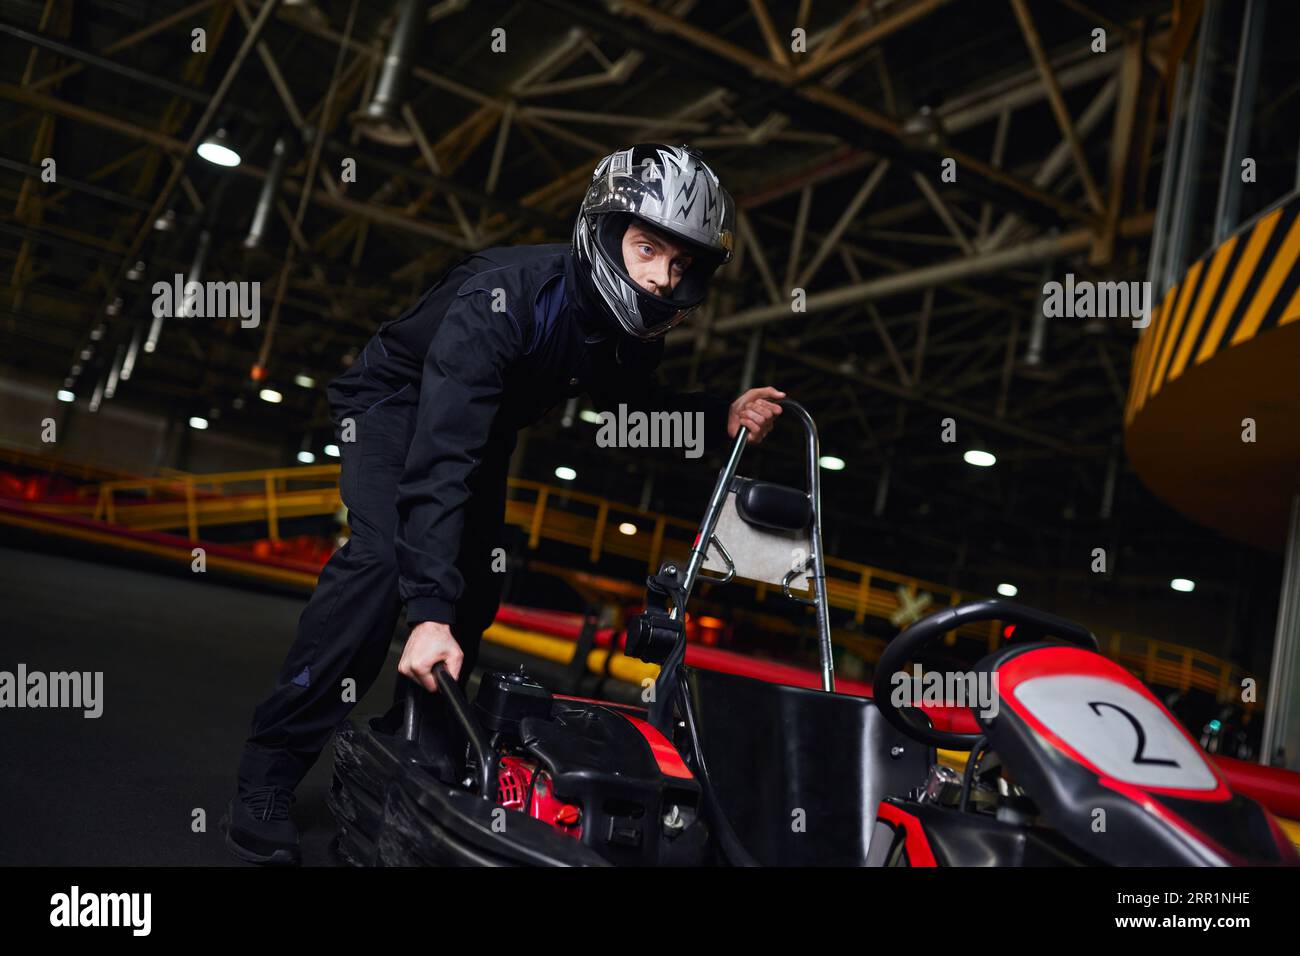 motorsport et speed drive, pilote de kart concentré en casque et sportswear poussant le kart sur circuit Banque D'Images